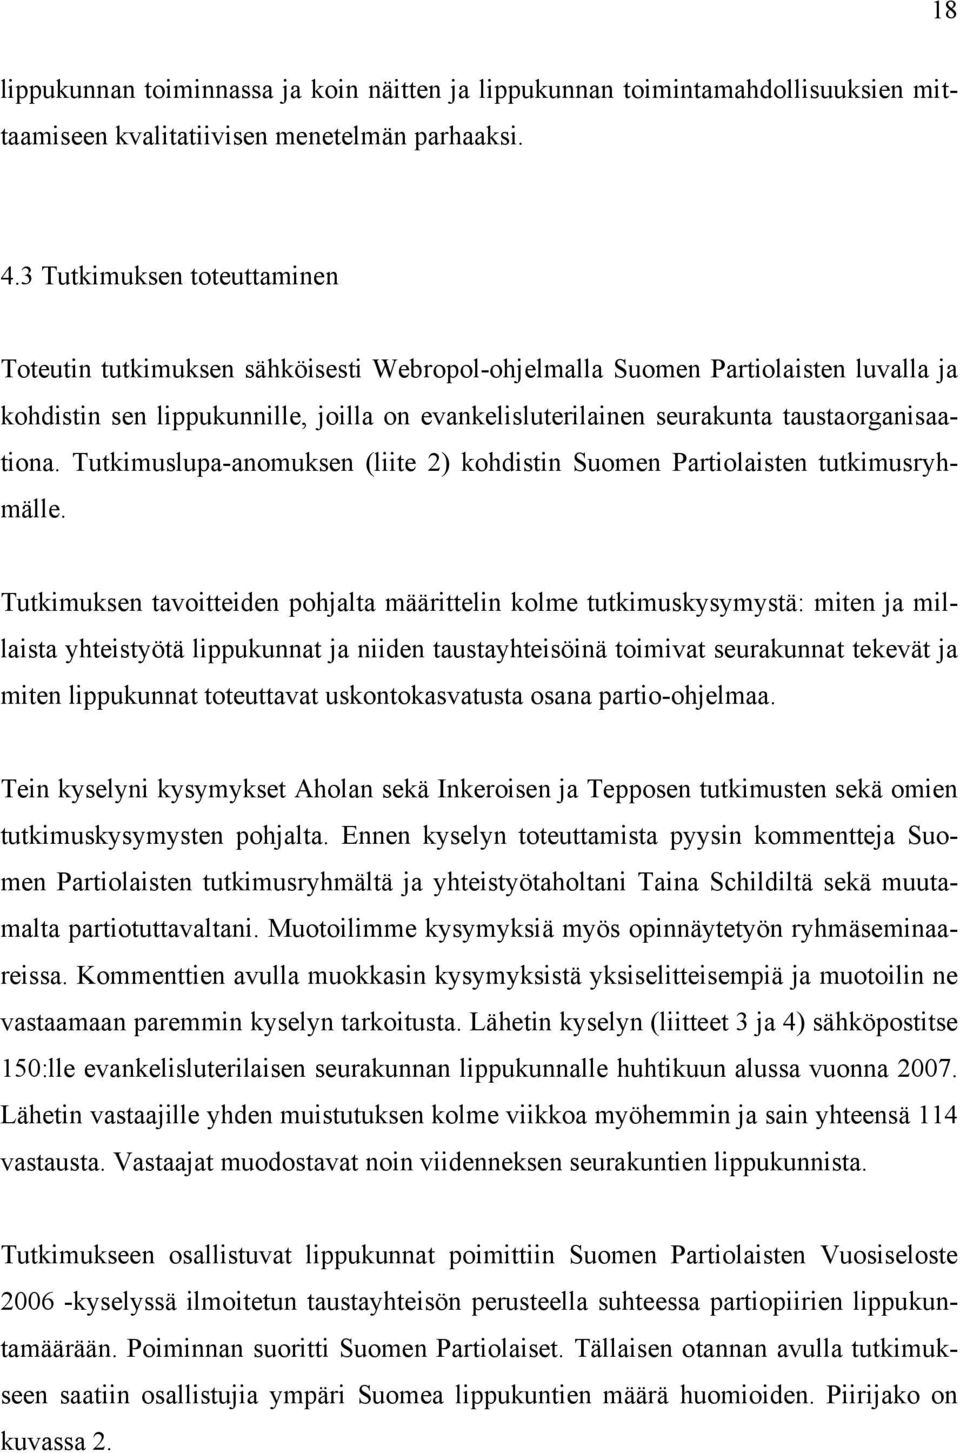 taustaorganisaationa. Tutkimuslupa-anomuksen (liite 2) kohdistin Suomen Partiolaisten tutkimusryhmälle.